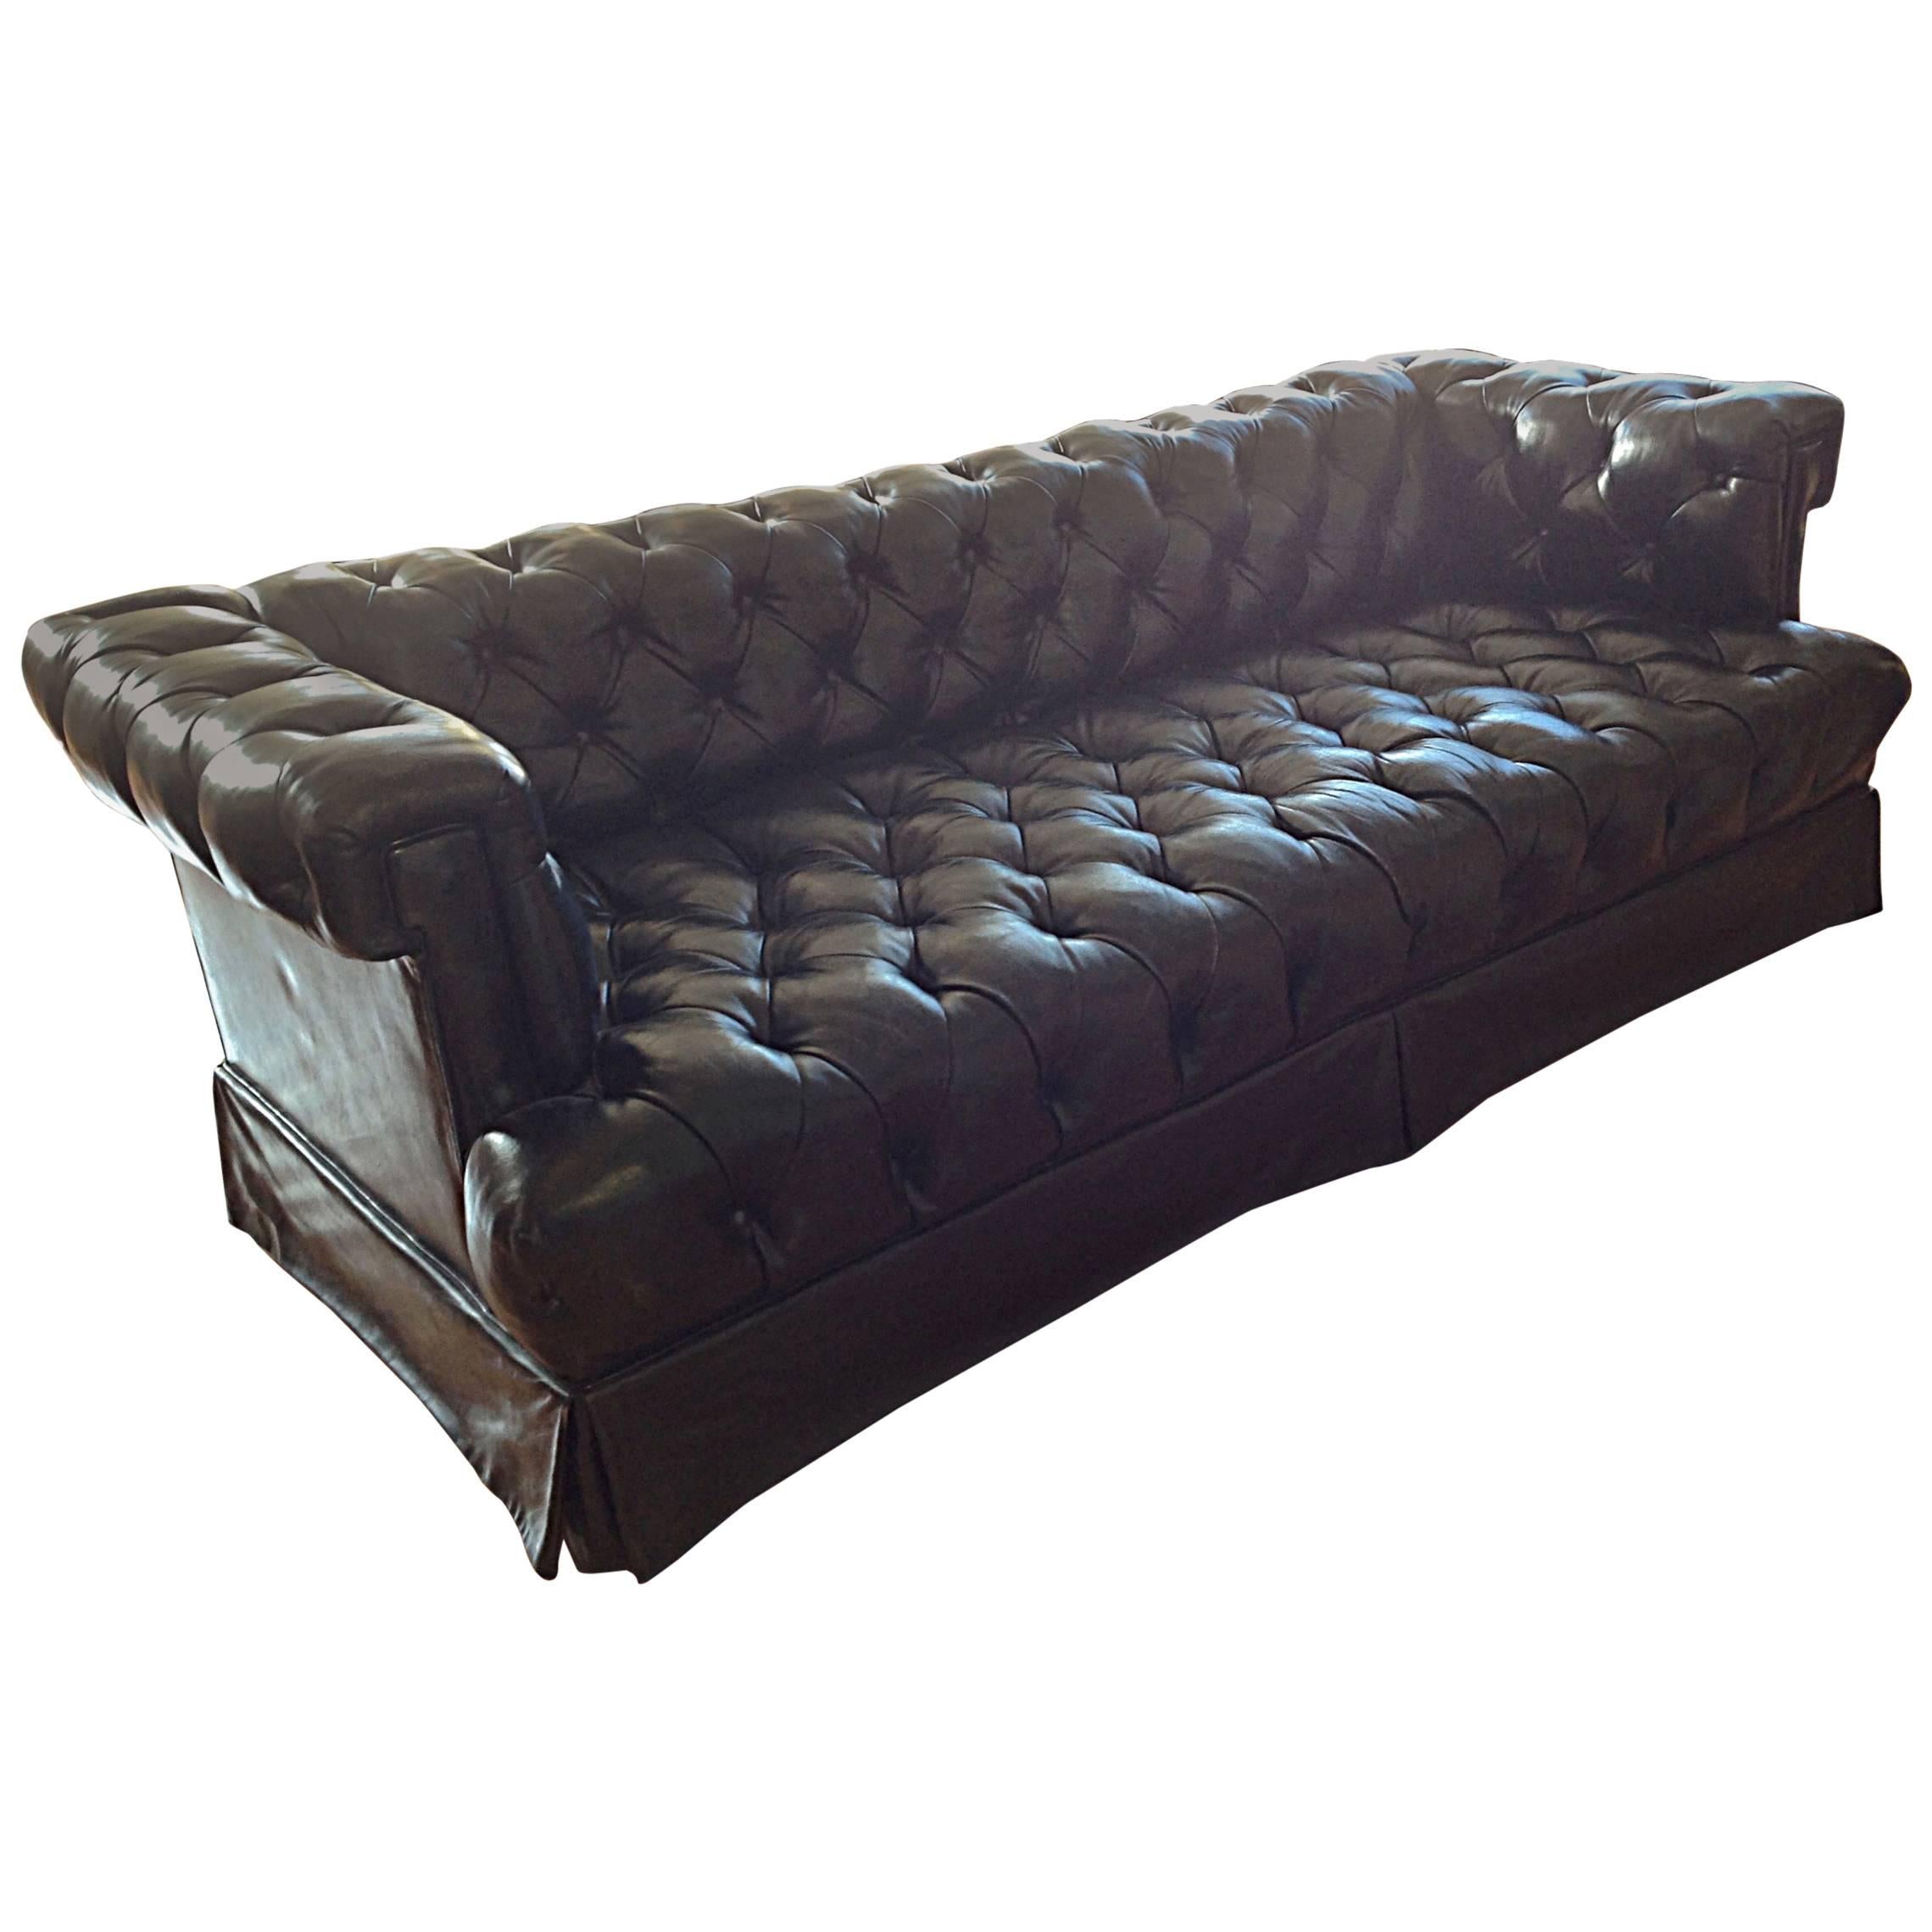 Tufted Black Leather Sofa